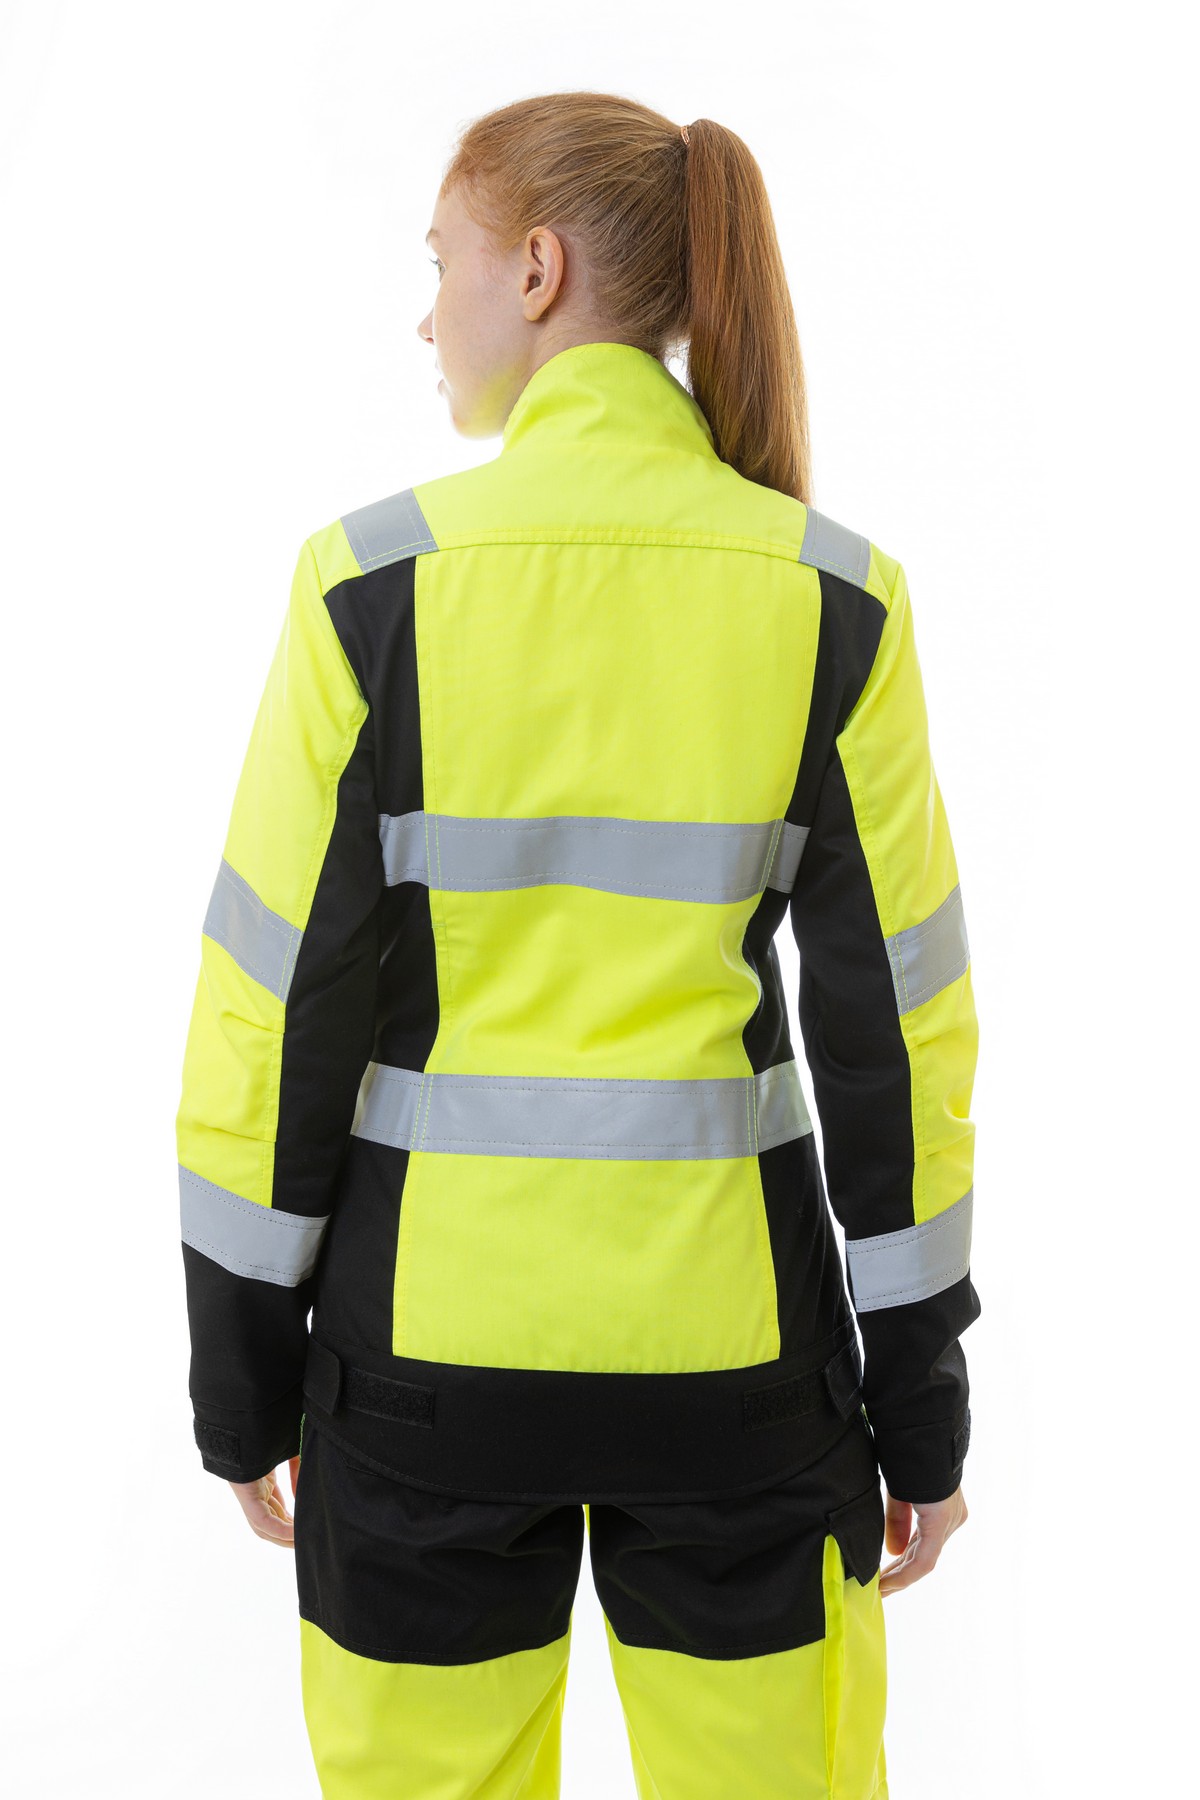 Женская сигнальная куртка BRODEKS KS 229, желтый/черный